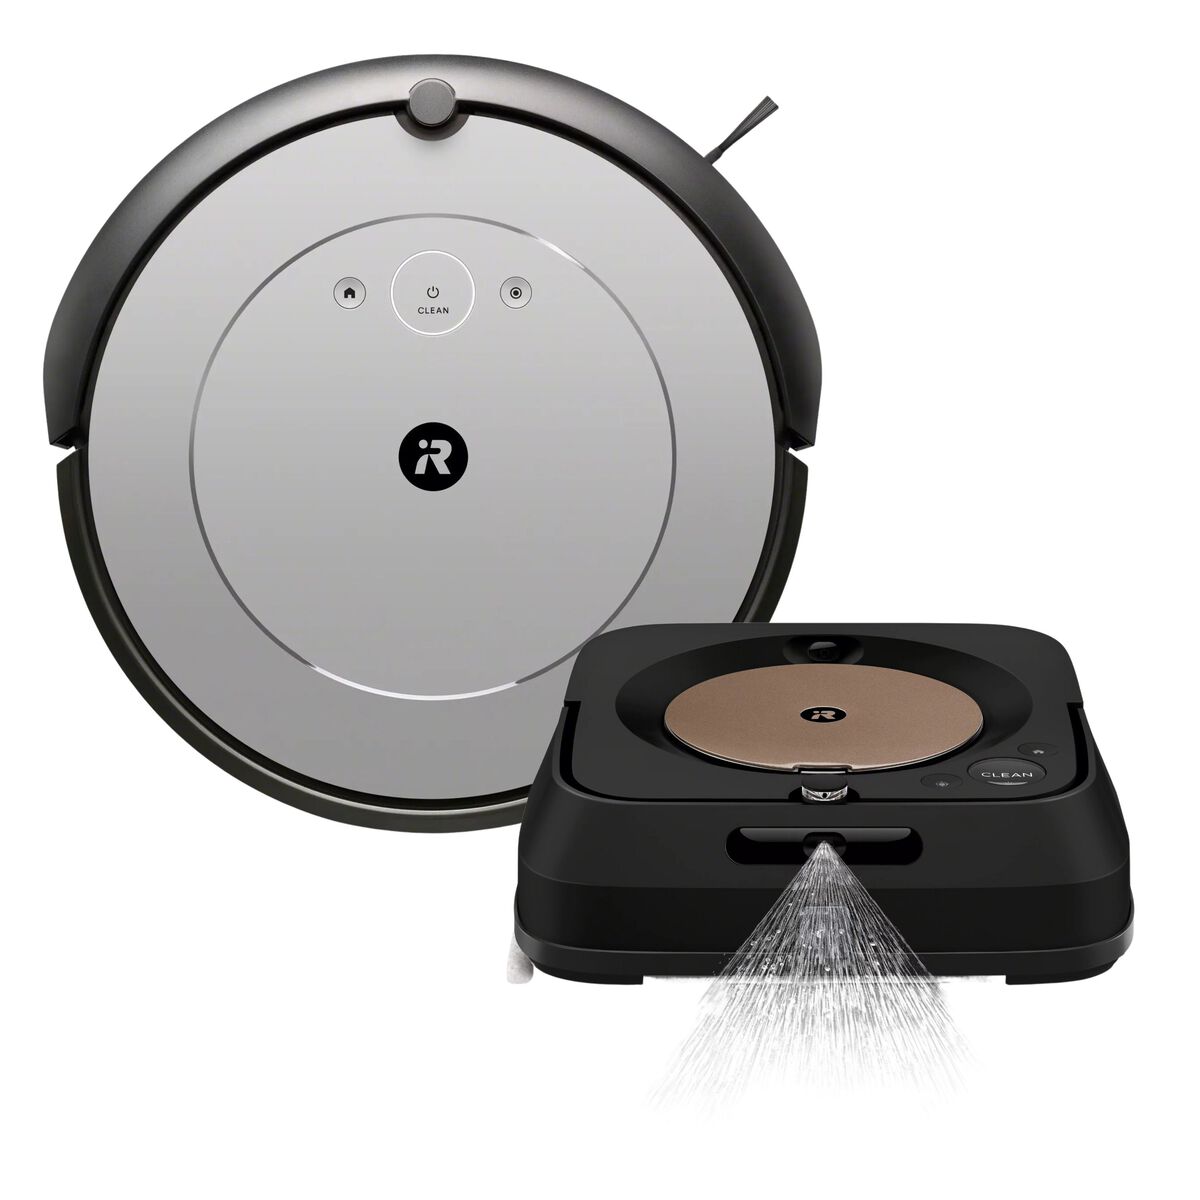 Robot aspirador Roomba® i1 & Robot esfregona Braava jet® m6, , large image number 0